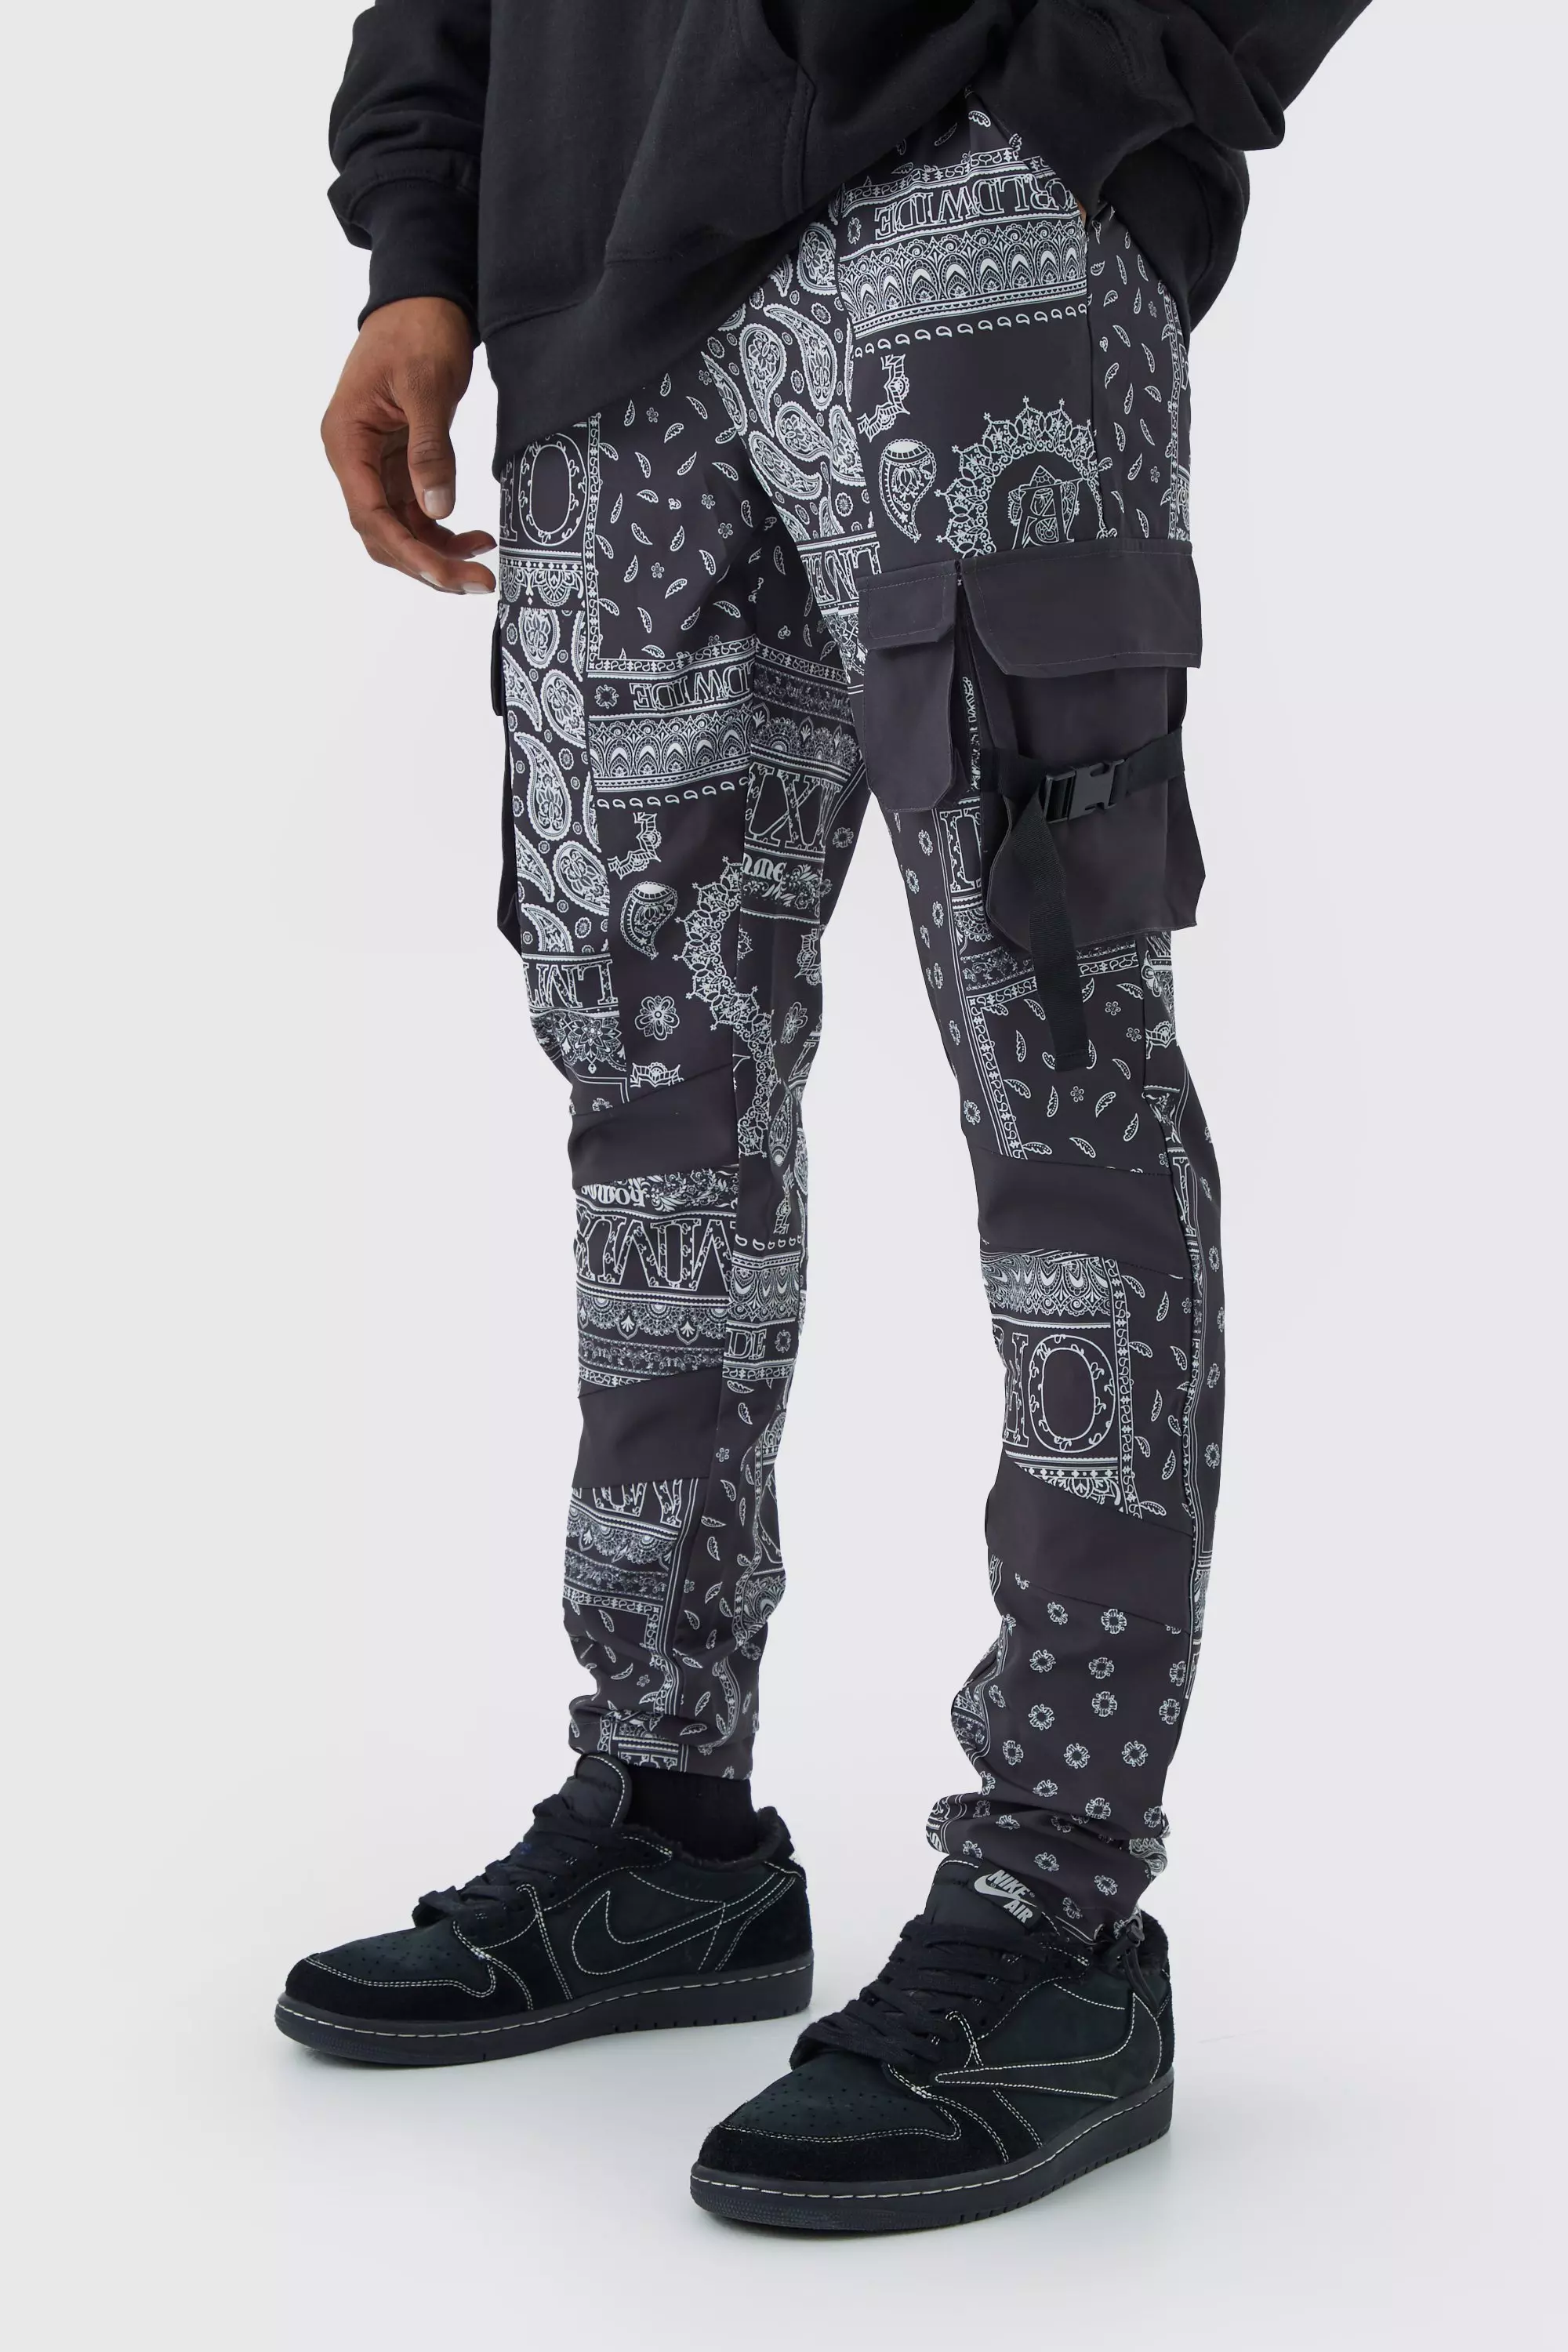 Charcoal Grey Skinny Bandana Multi Cargo Buckle Pants